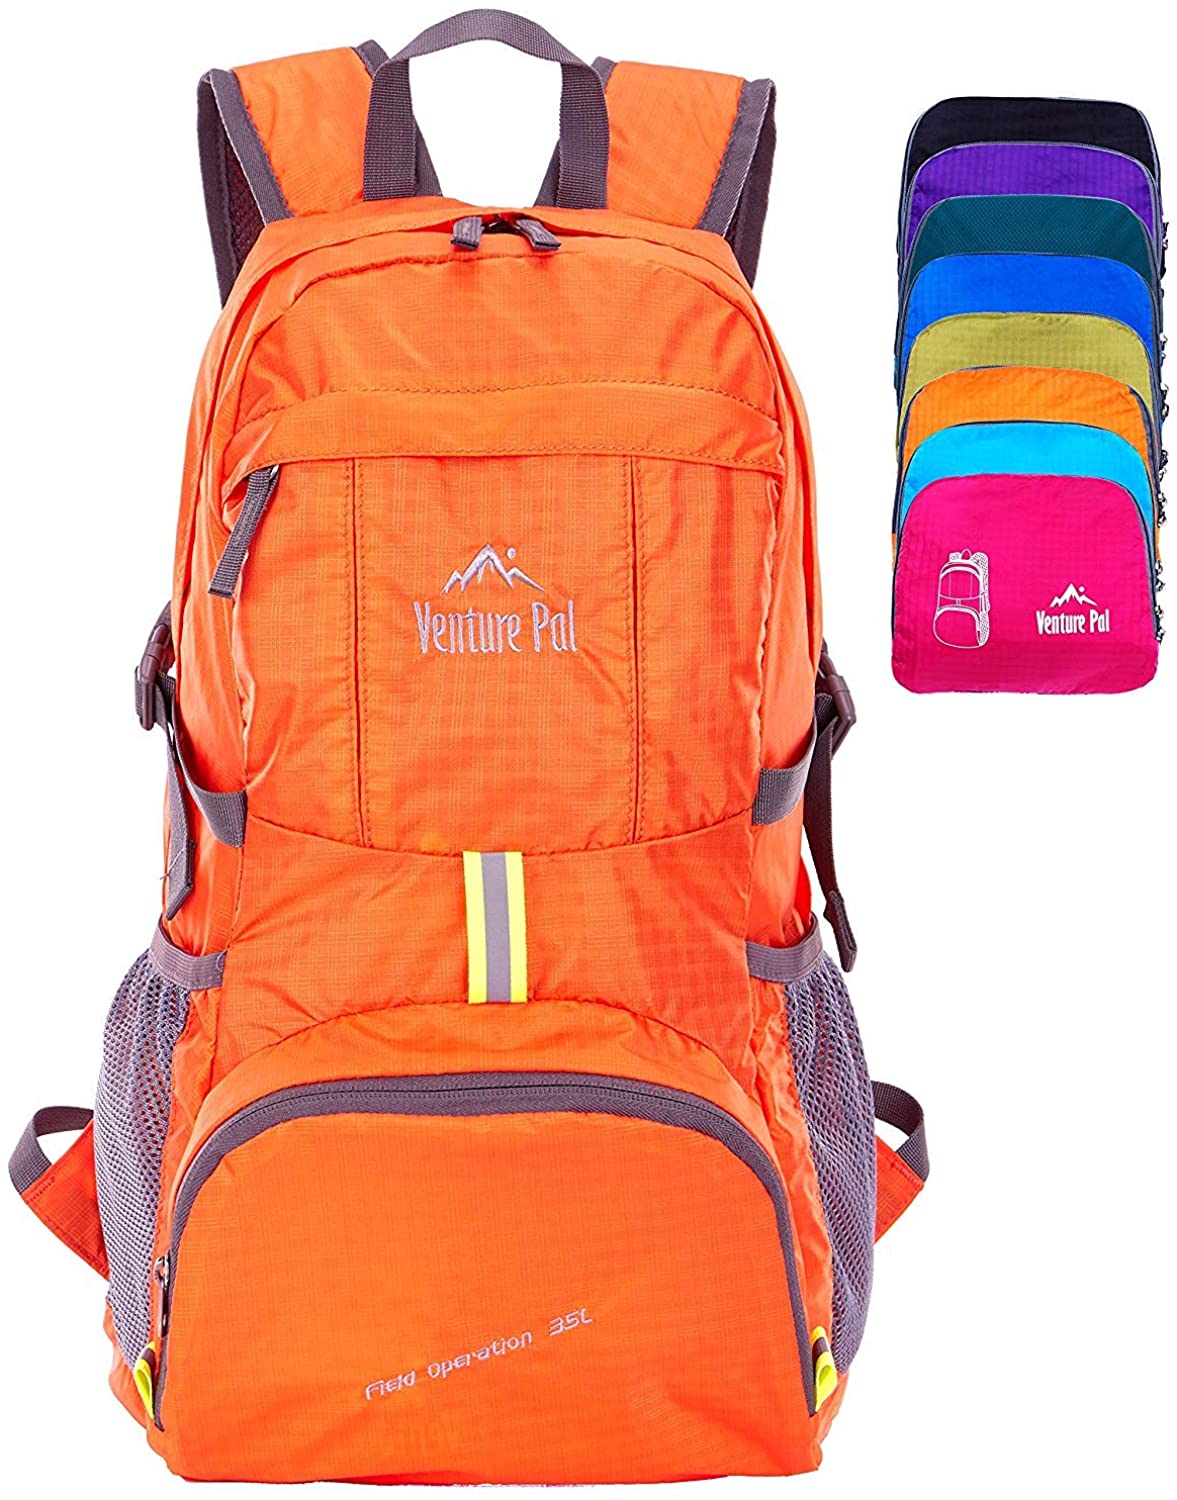 Venture Pal Lightweight Packable Daypack